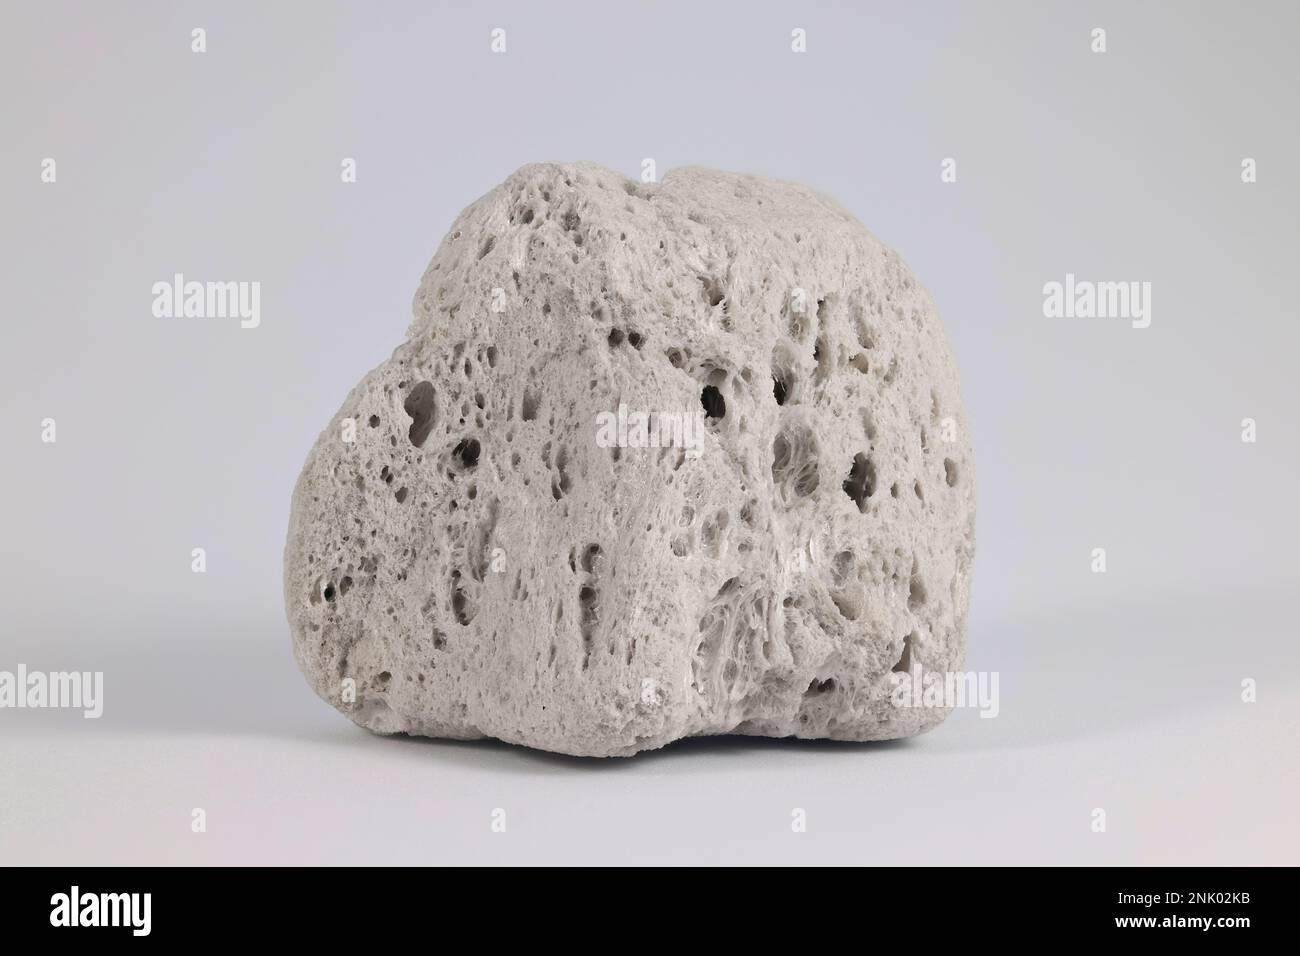 Bimice ist ein vulkanischer Felsen, der aus stark vesikulärem, rauen vulkanischen Glas besteht Stockfoto